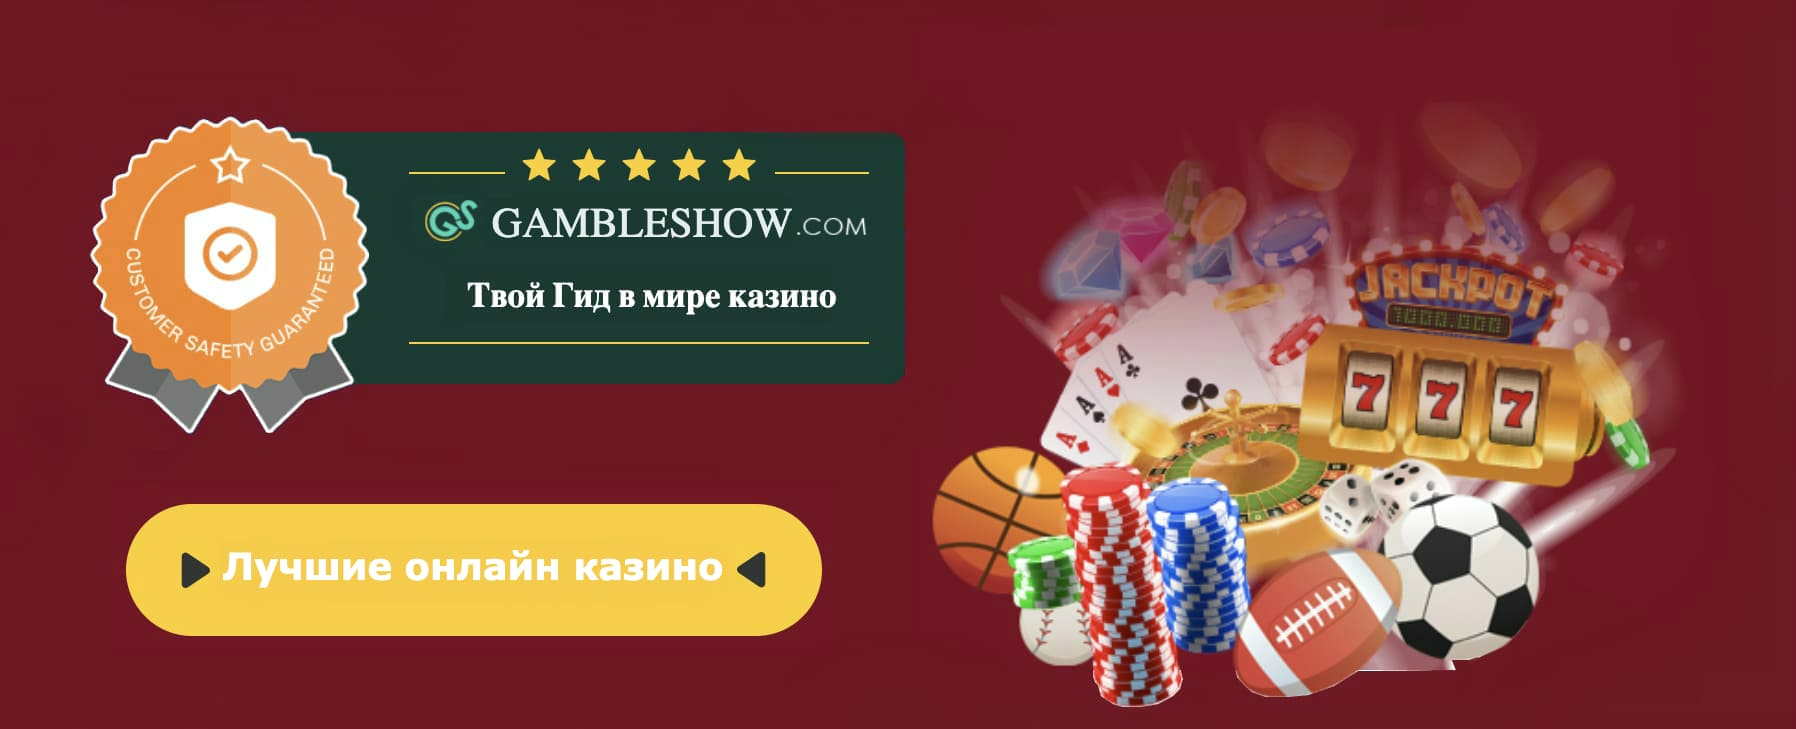 Site de casino online em bitcoins